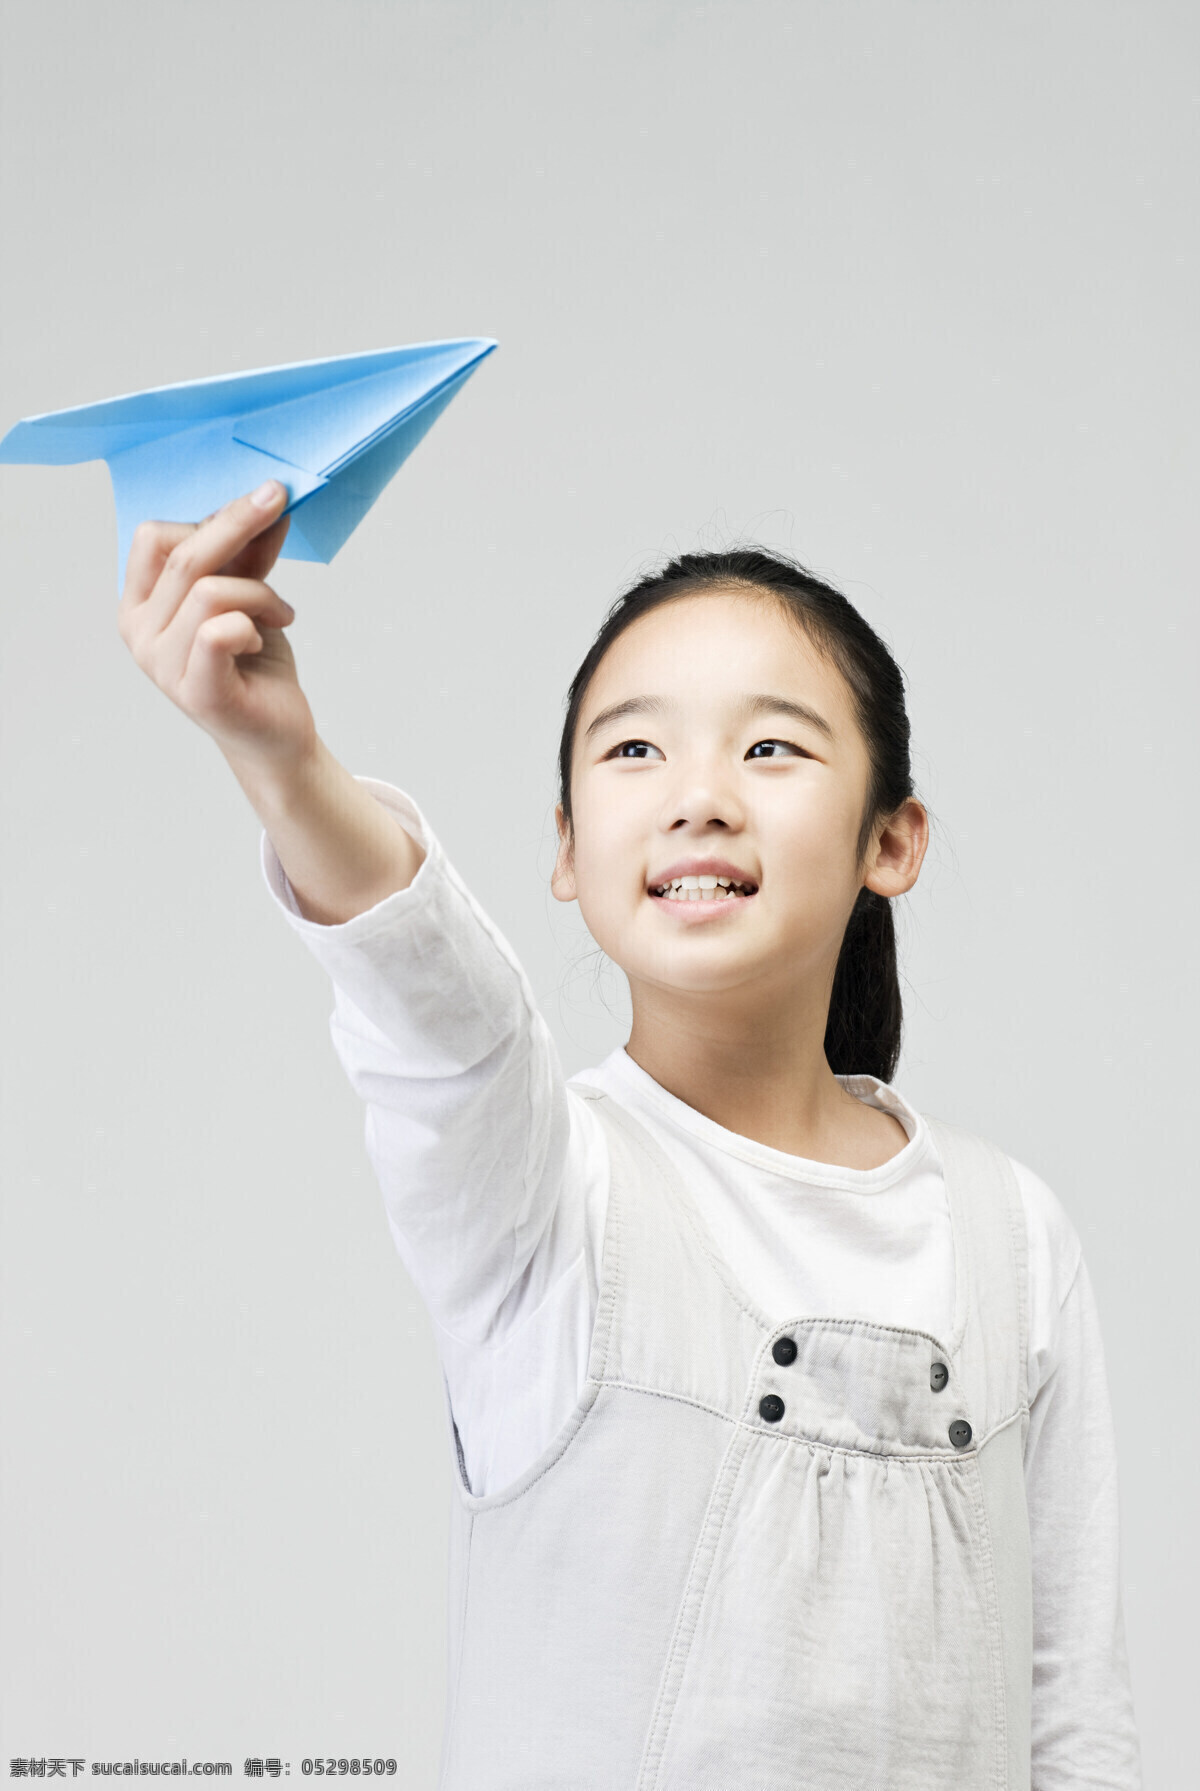 纸 飞机 可爱 女生 学生 同学 儿童 女孩 天真可爱 小学 学校 教育 纸飞机 摄影图 素材图库 高清图片 儿童图片 人物图片